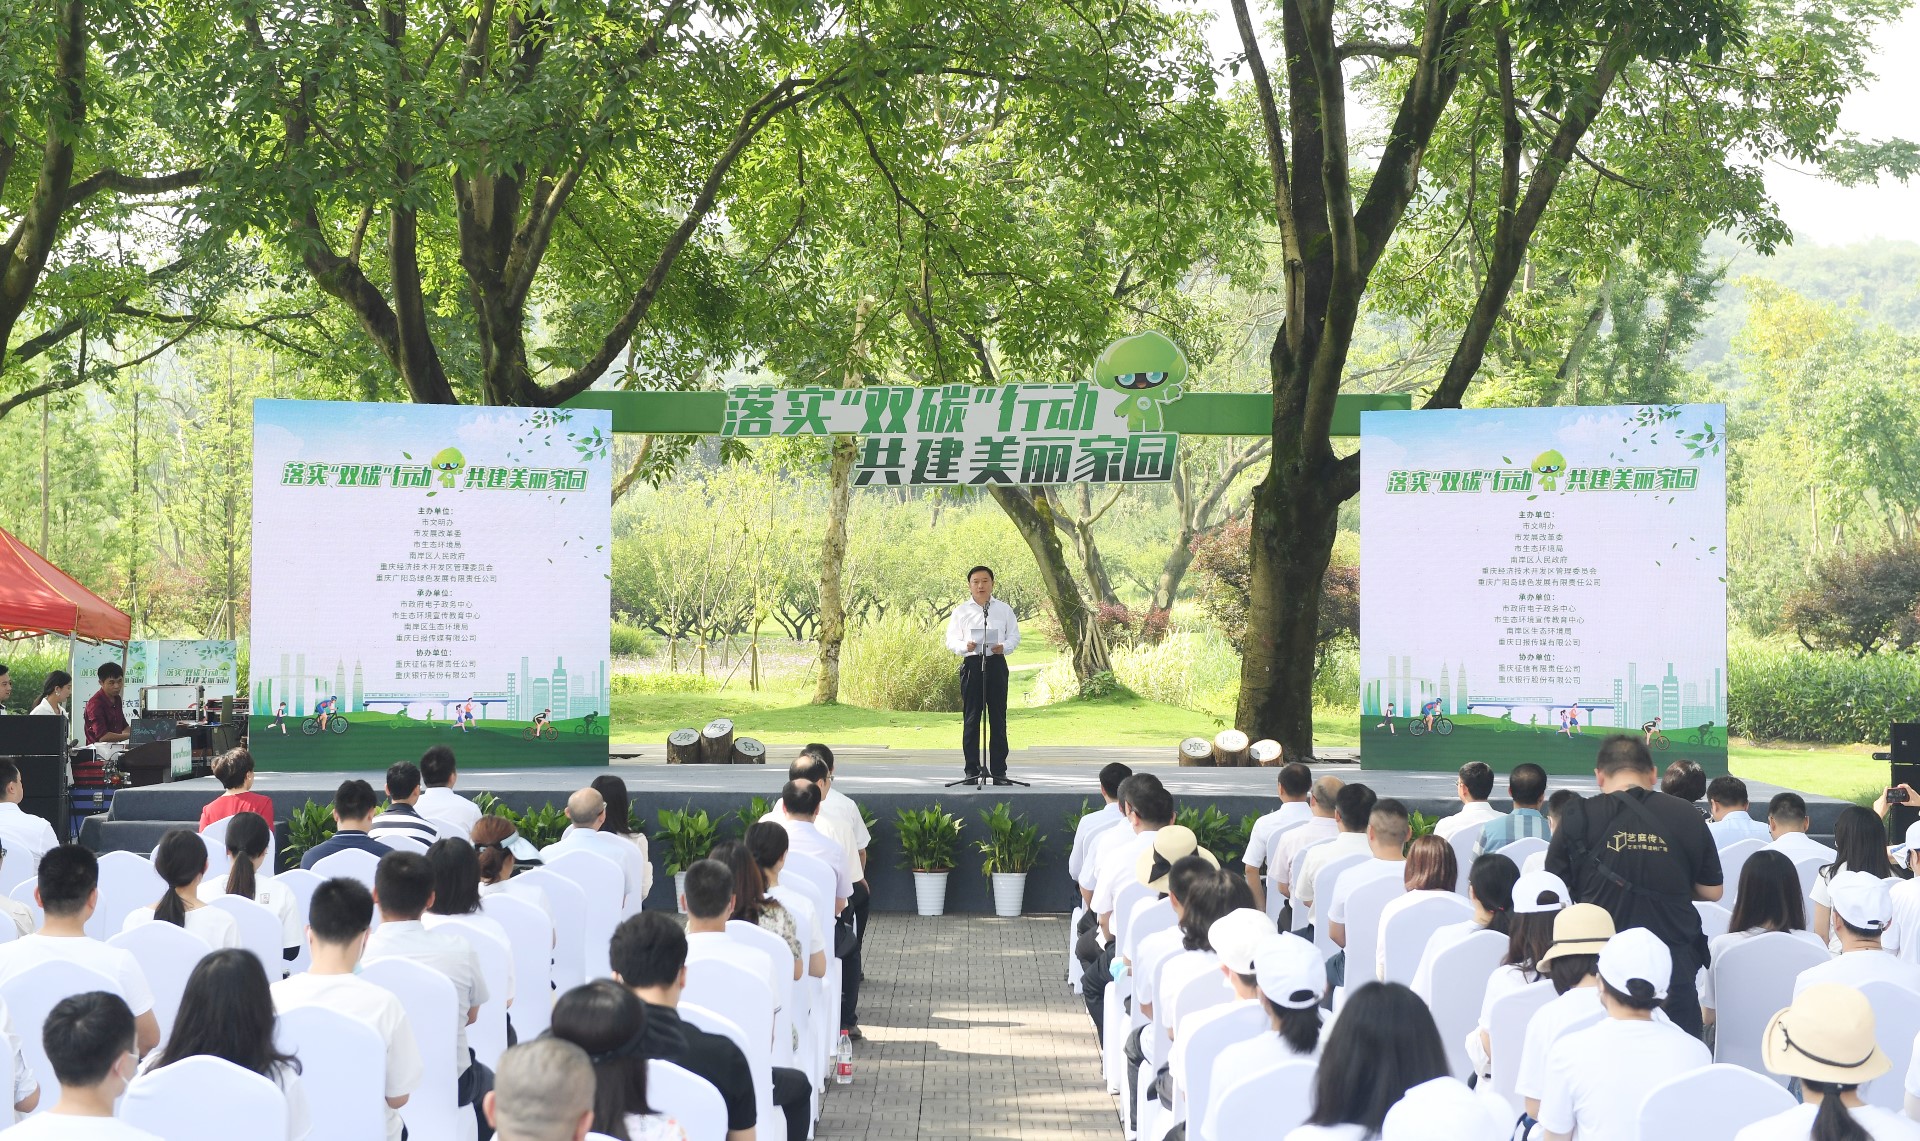 “落实双碳行动共建美丽家园”主题宣传活动在广阳岛举办